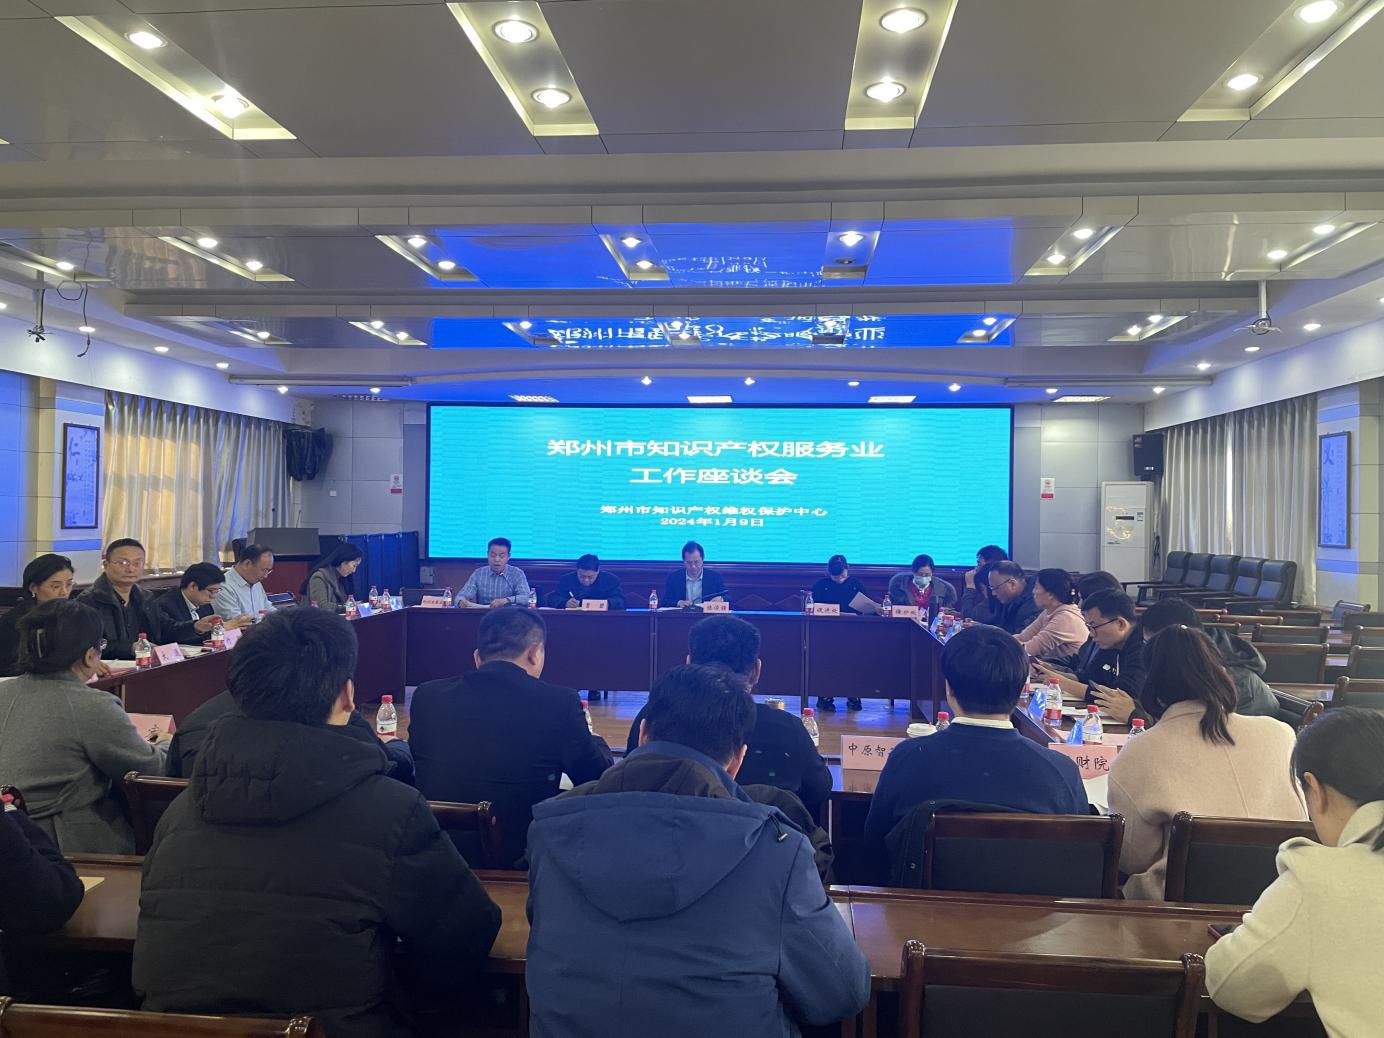 郑州市知识产权维权保护中心组织召开郑州市知识产权服务业工作座谈会